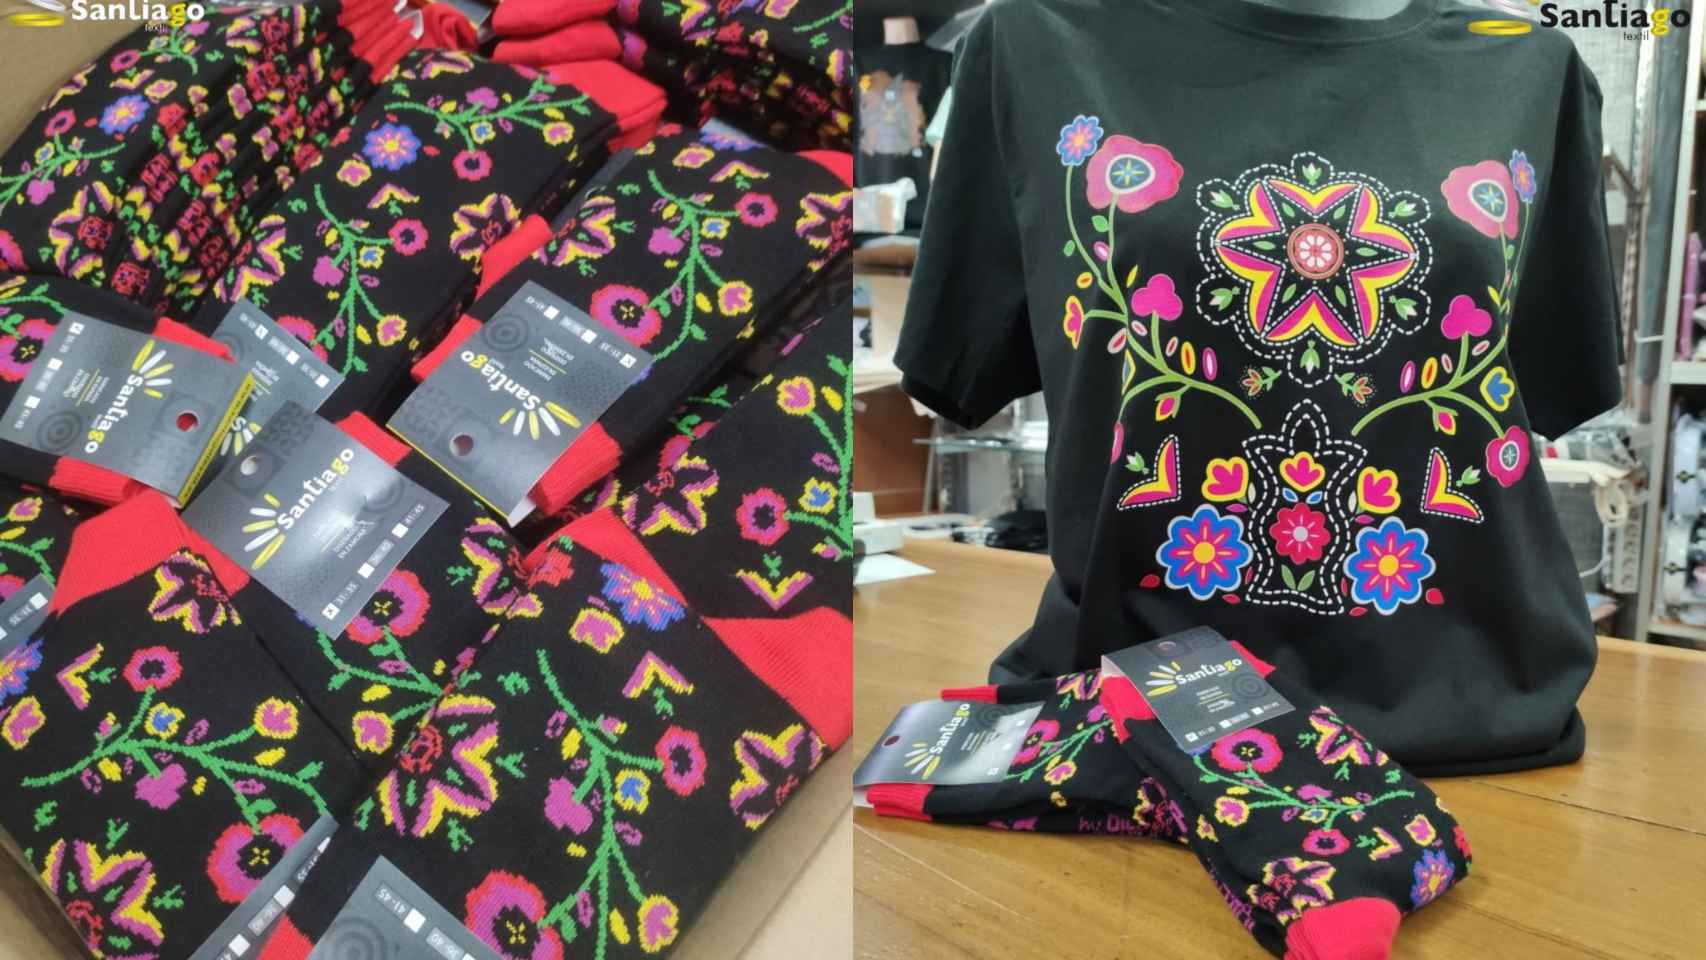 Calcetines y camisetas con motivos del bordado carbajalino